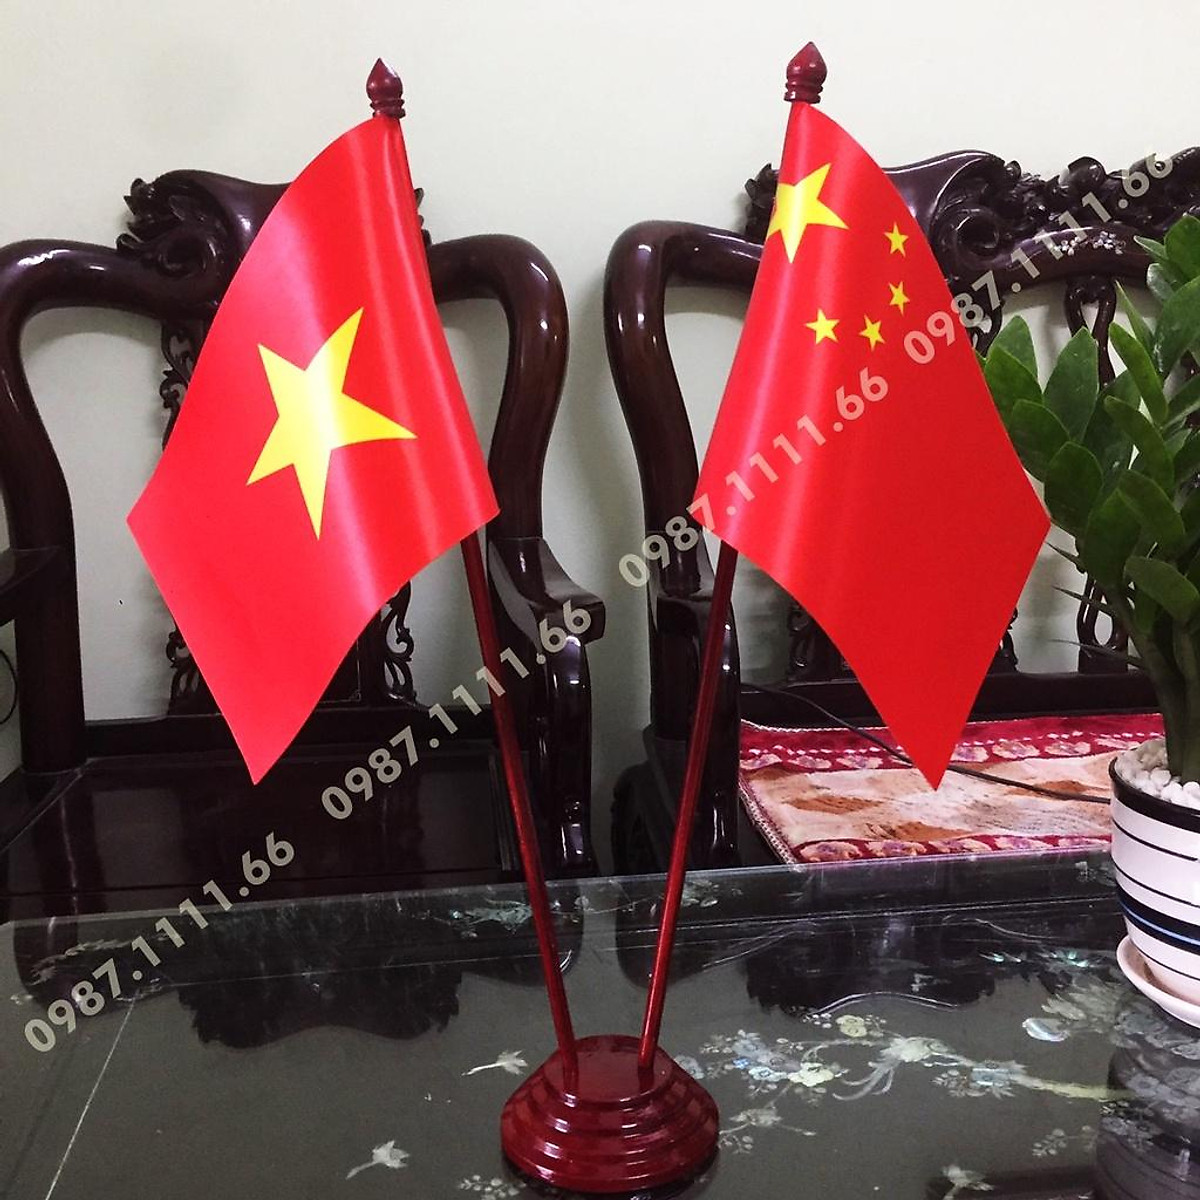 Cờ Để Bàn Đế gỗ Cắm 2 cờ Việt Nam - Trung Quốc In Kỹ Thuật Số 3D: Hãy cùng chiêm ngưỡng chiếc cờ Việt Nam kỹ thuật số 3D được in đầy sắc nét, tinh tế trên chiếc cờ đặc biệt này. Tỉ lệ 2 cờ Việt Nam - Trung Quốc cân đối nhau trên đế gỗ tạo nên chiếc cờ đẹp mắt và ấn tượng. Sản phẩm phù hợp để trang trí phòng làm việc, phòng khách, hoặc văn phòng công ty. Cùng truy cập vào hình ảnh để khám phá sản phẩm độc đáo này ngay nào!